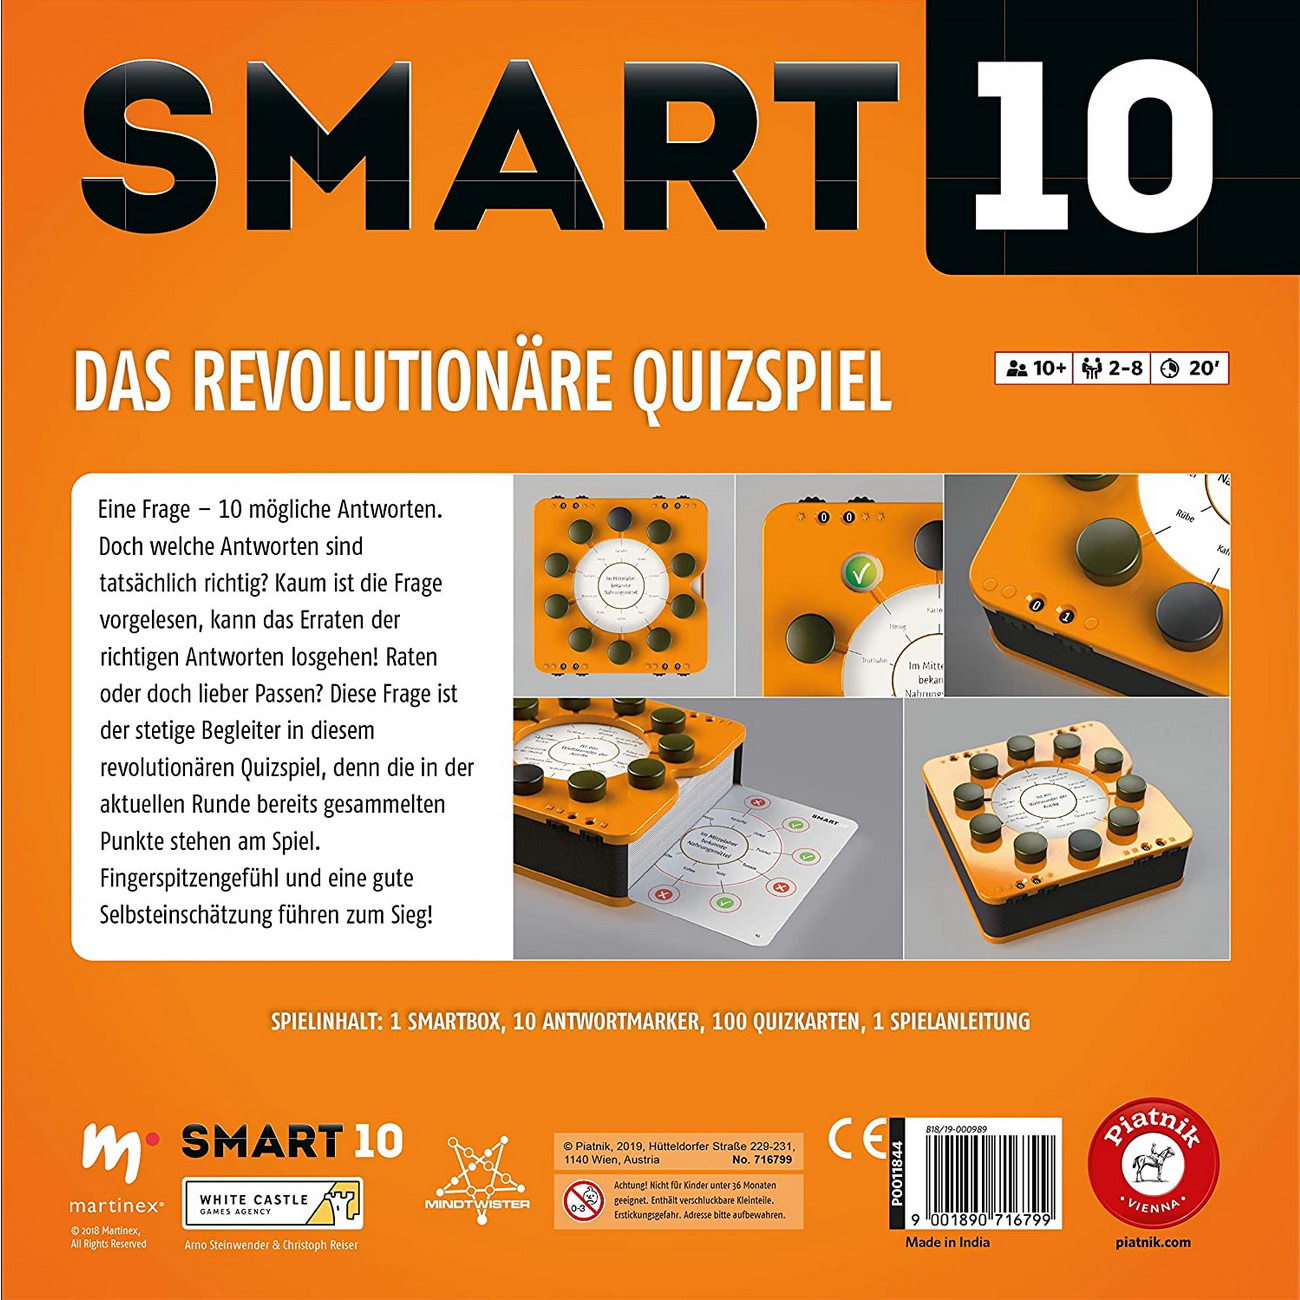 Smart 10 - Das revolutionäre Quizspiel (Piatnik 7167)